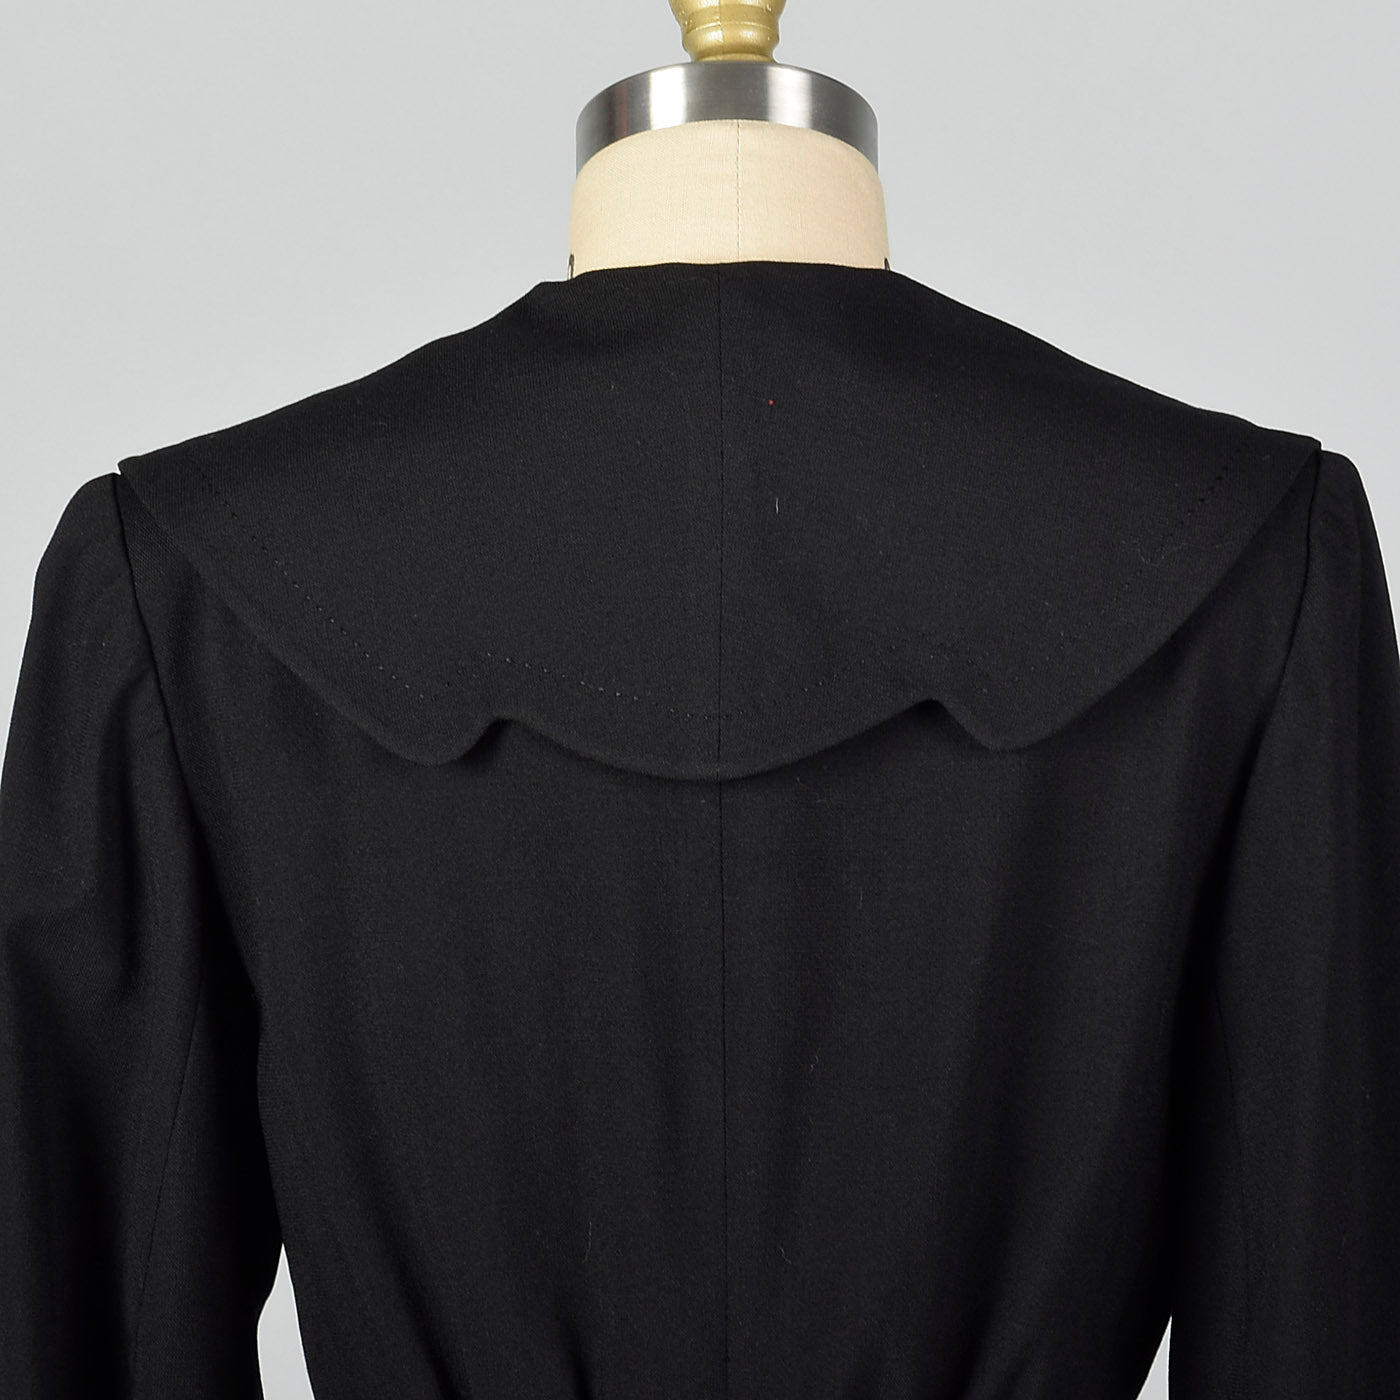 Small 1950s Black Blazer Jacket